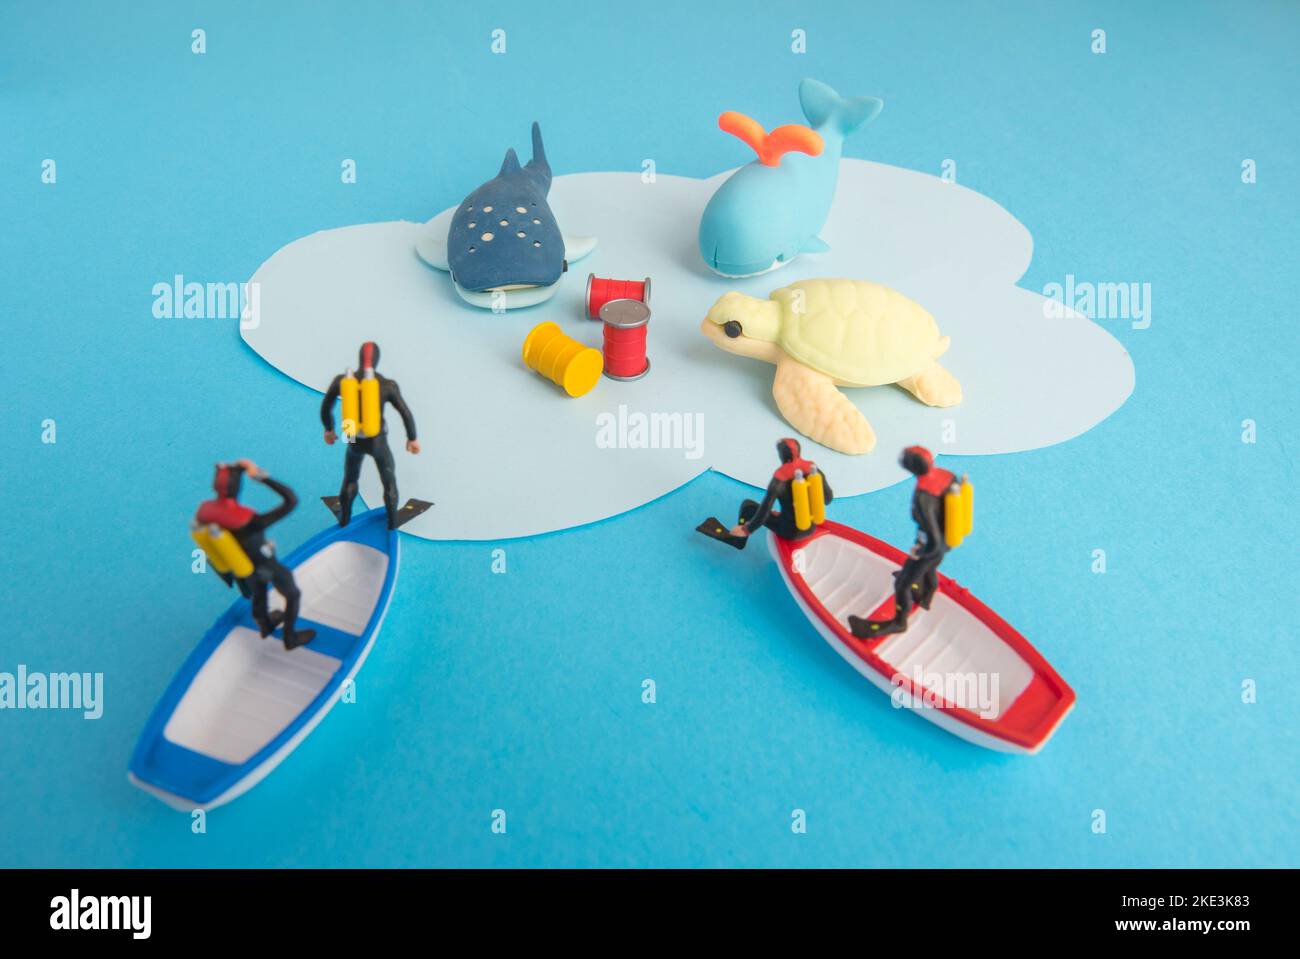 Miniaturspielzeug - Draufsicht giftige Abfälle, die ins Meer geworfen wurden, führten zur Zerstörung von Meeresleben und zum Konzept der Meeresverschmutzung. Stockfoto